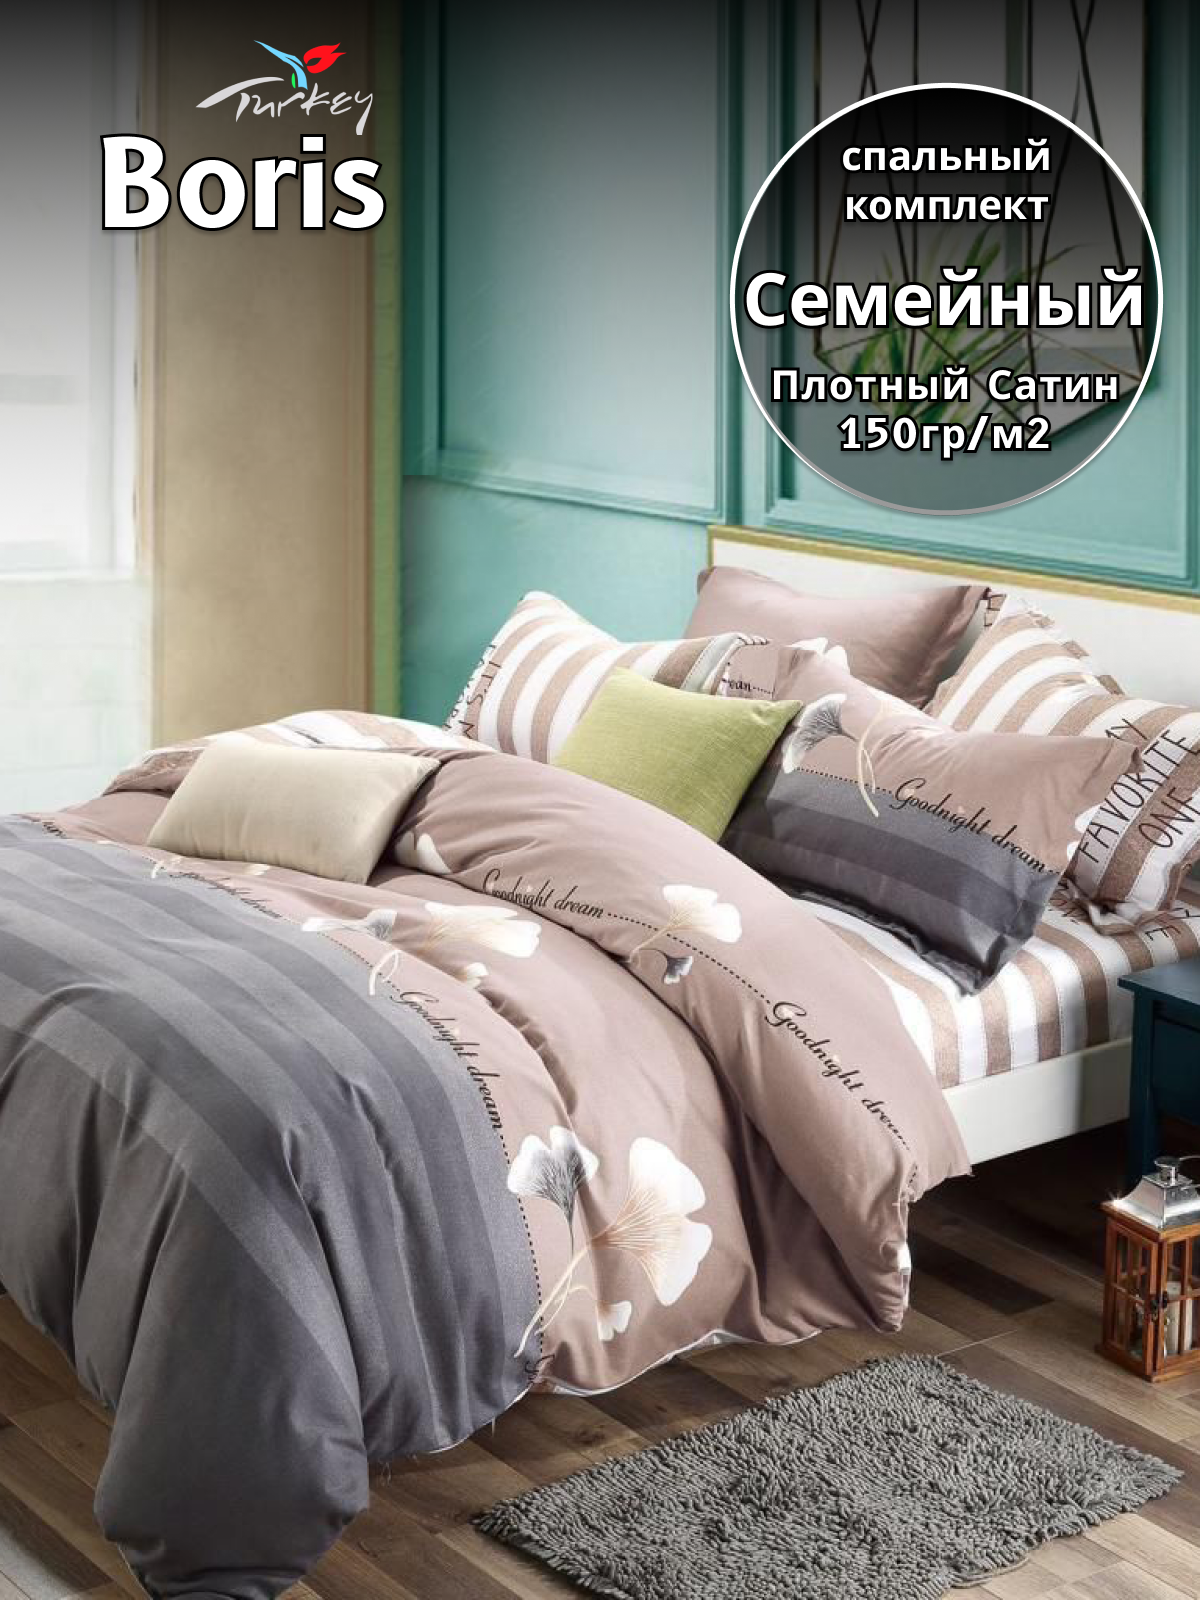 Комплект постельного белья Belle Store Boris Home Collection Семейное сатин